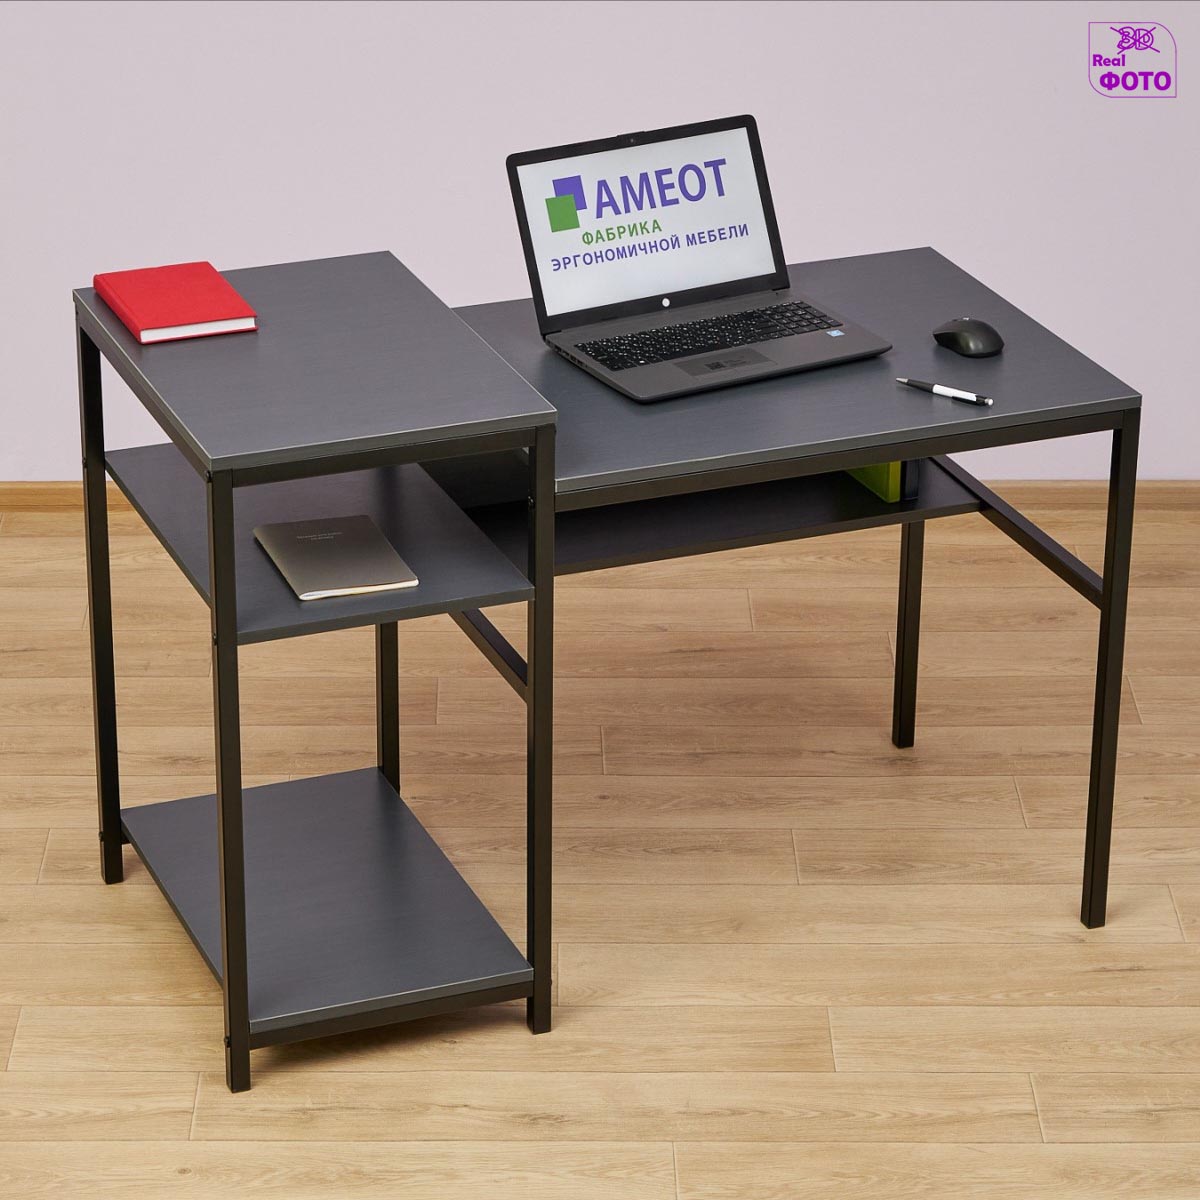 Офисные столы для принтера и оргтехники